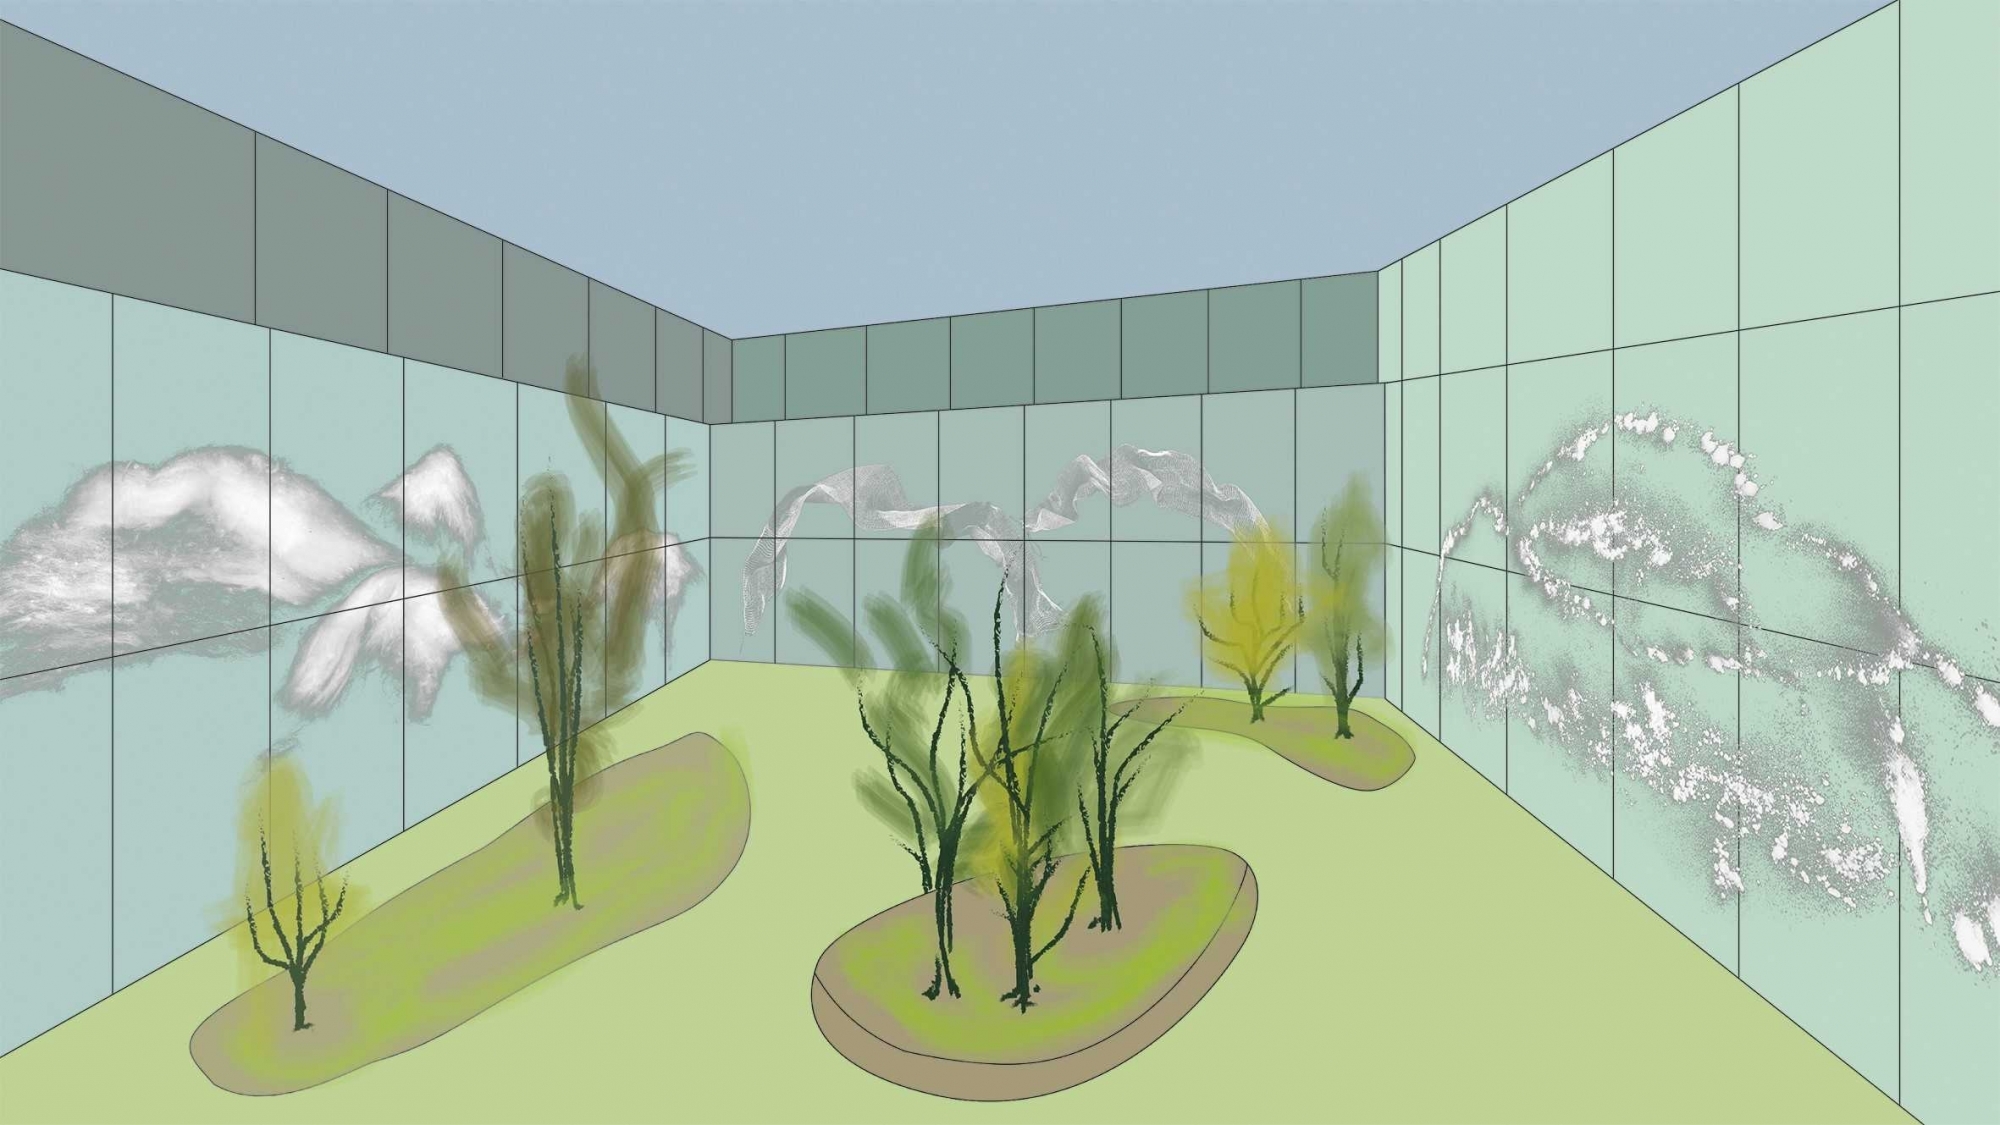 Une vision artistique pour orner la future extension de l'hôpital de Sion.